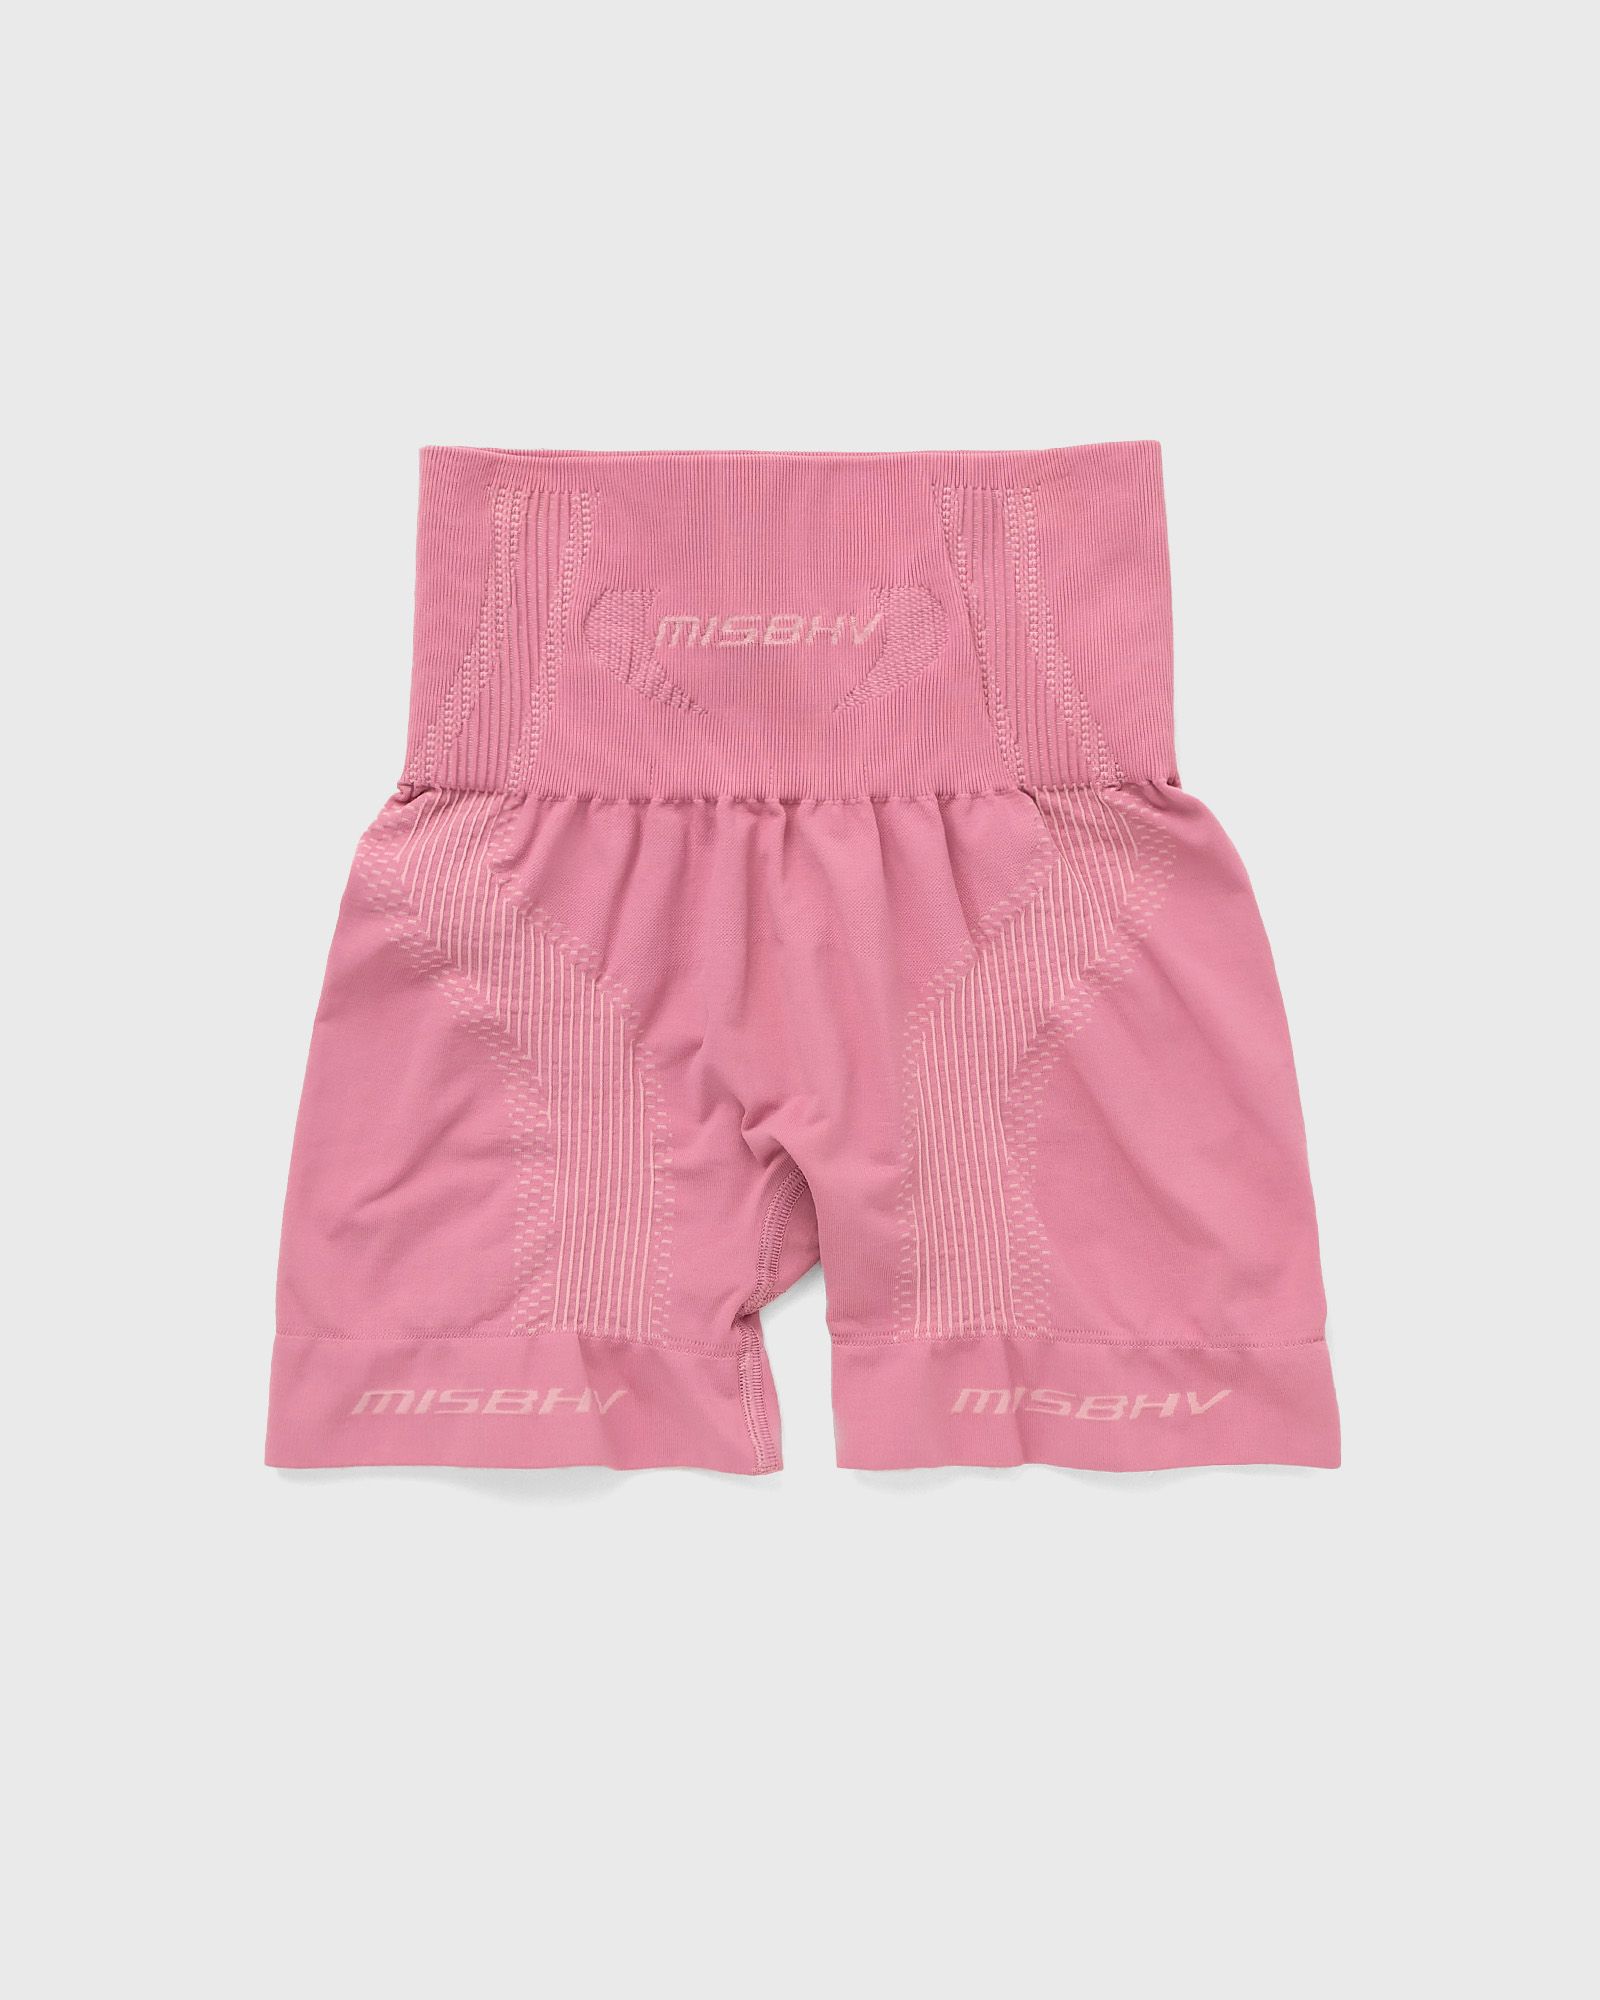 MISBHV - sport shorter shorts bubblegum women sport & team shorts pink in größe:l/xl